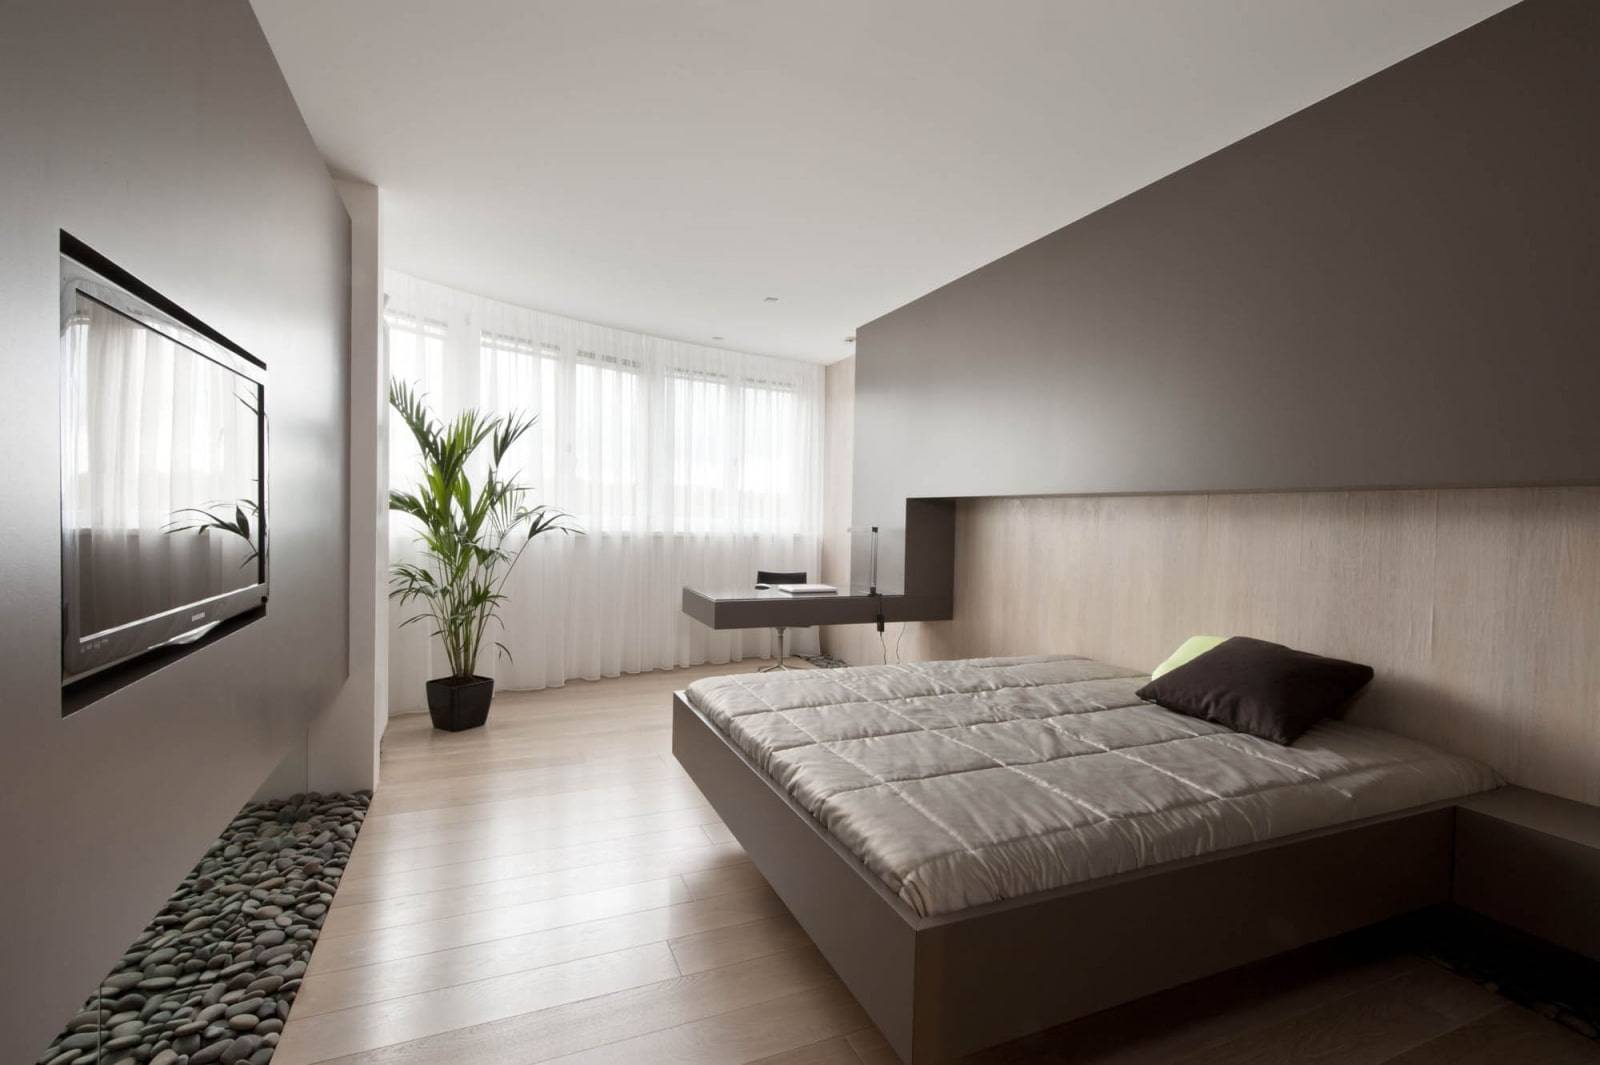 Спальня в стиле минимализм: дизайн интерьера в светлых тонах - 24 фото